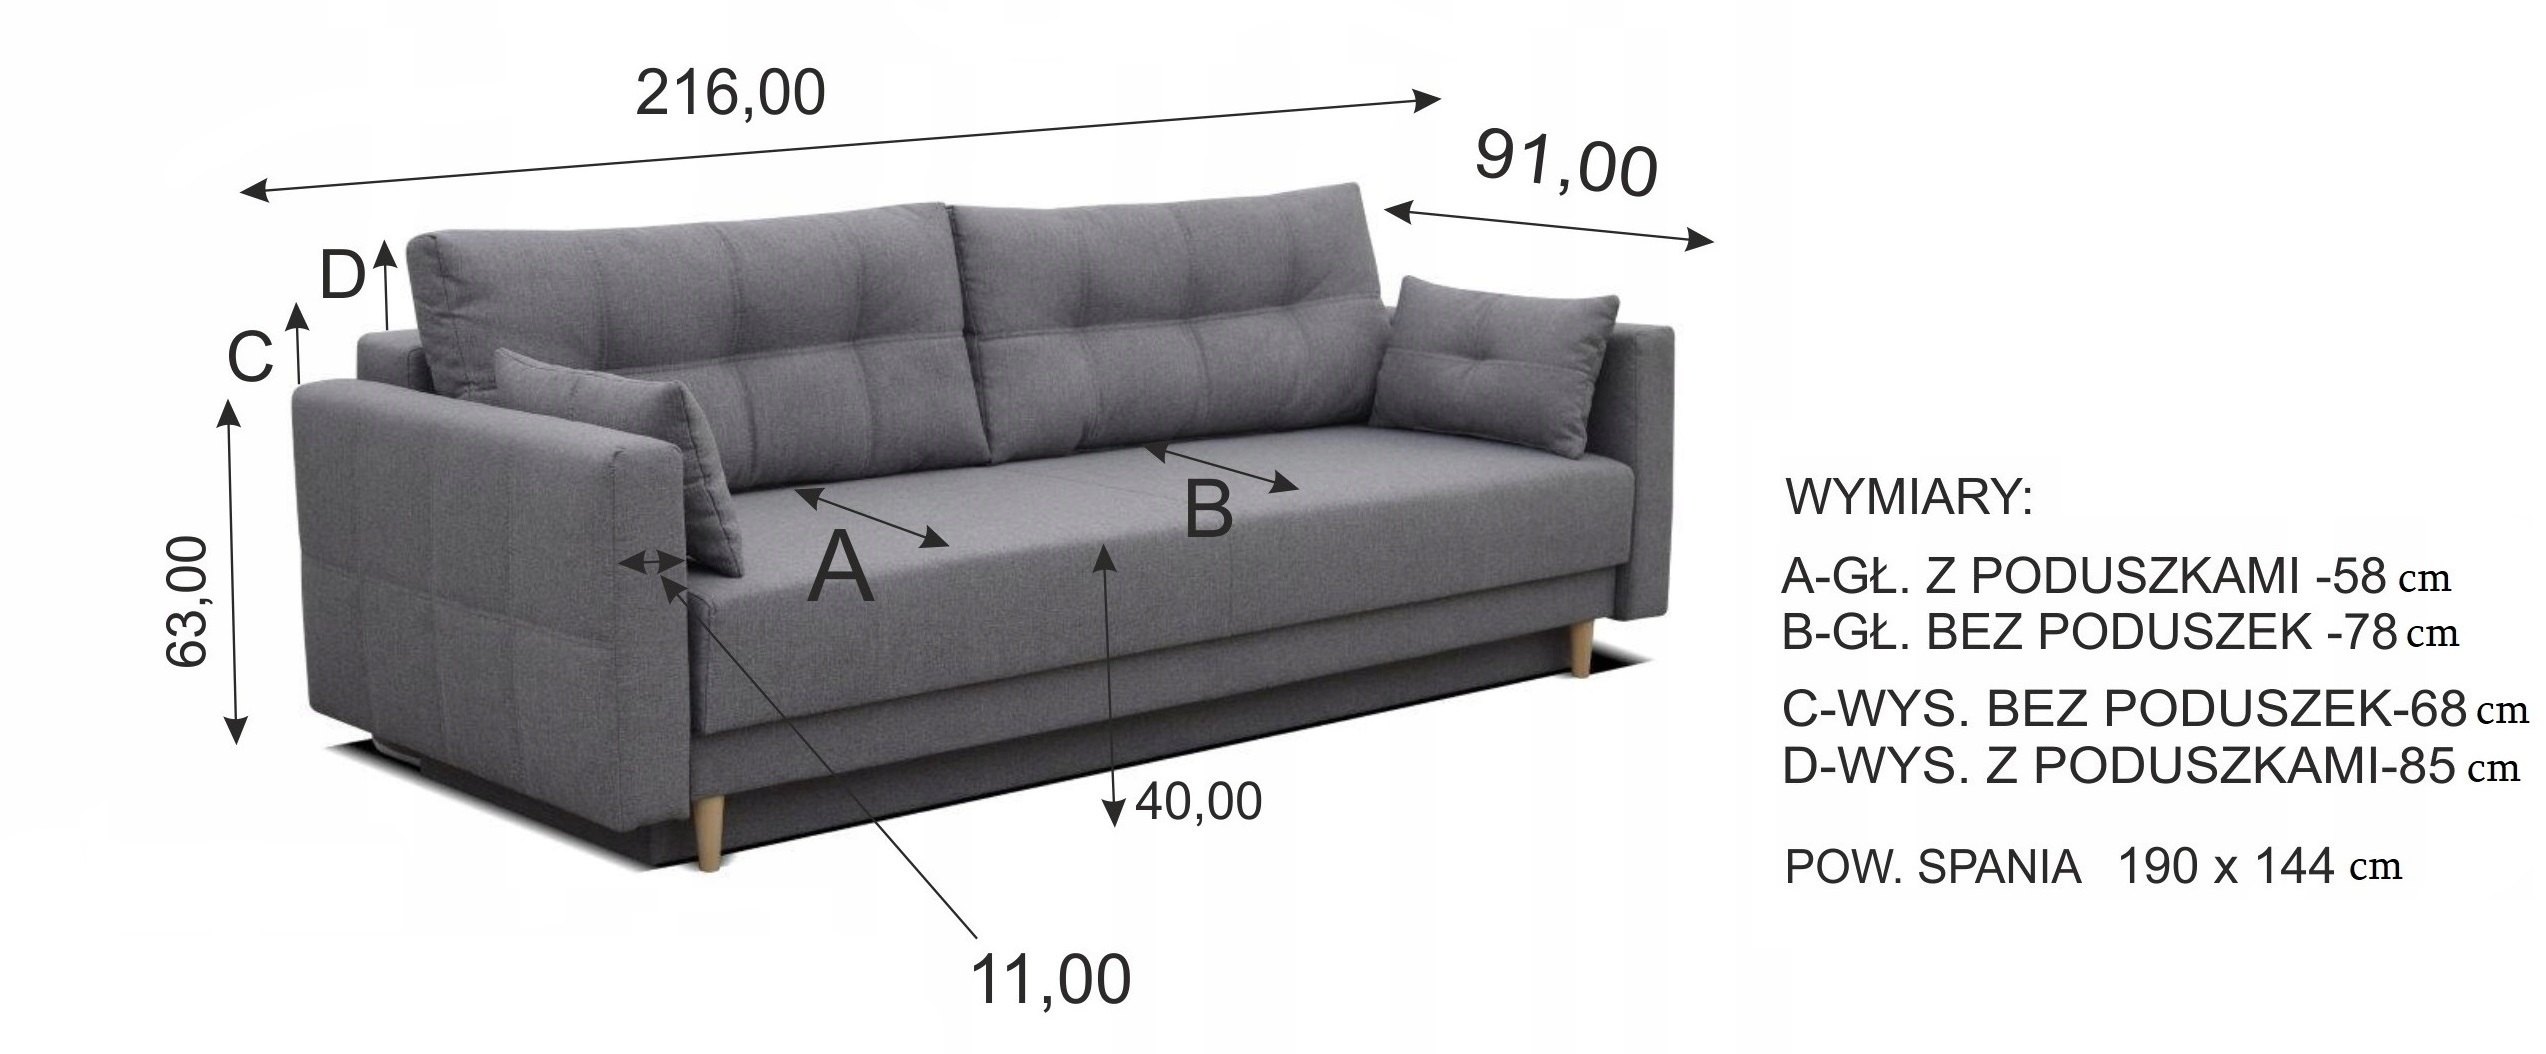 Nowoczesna Kanapa LEMA trzyosobowa sofa z funkcja spania pikowane poduszki - zdjęcie produktu